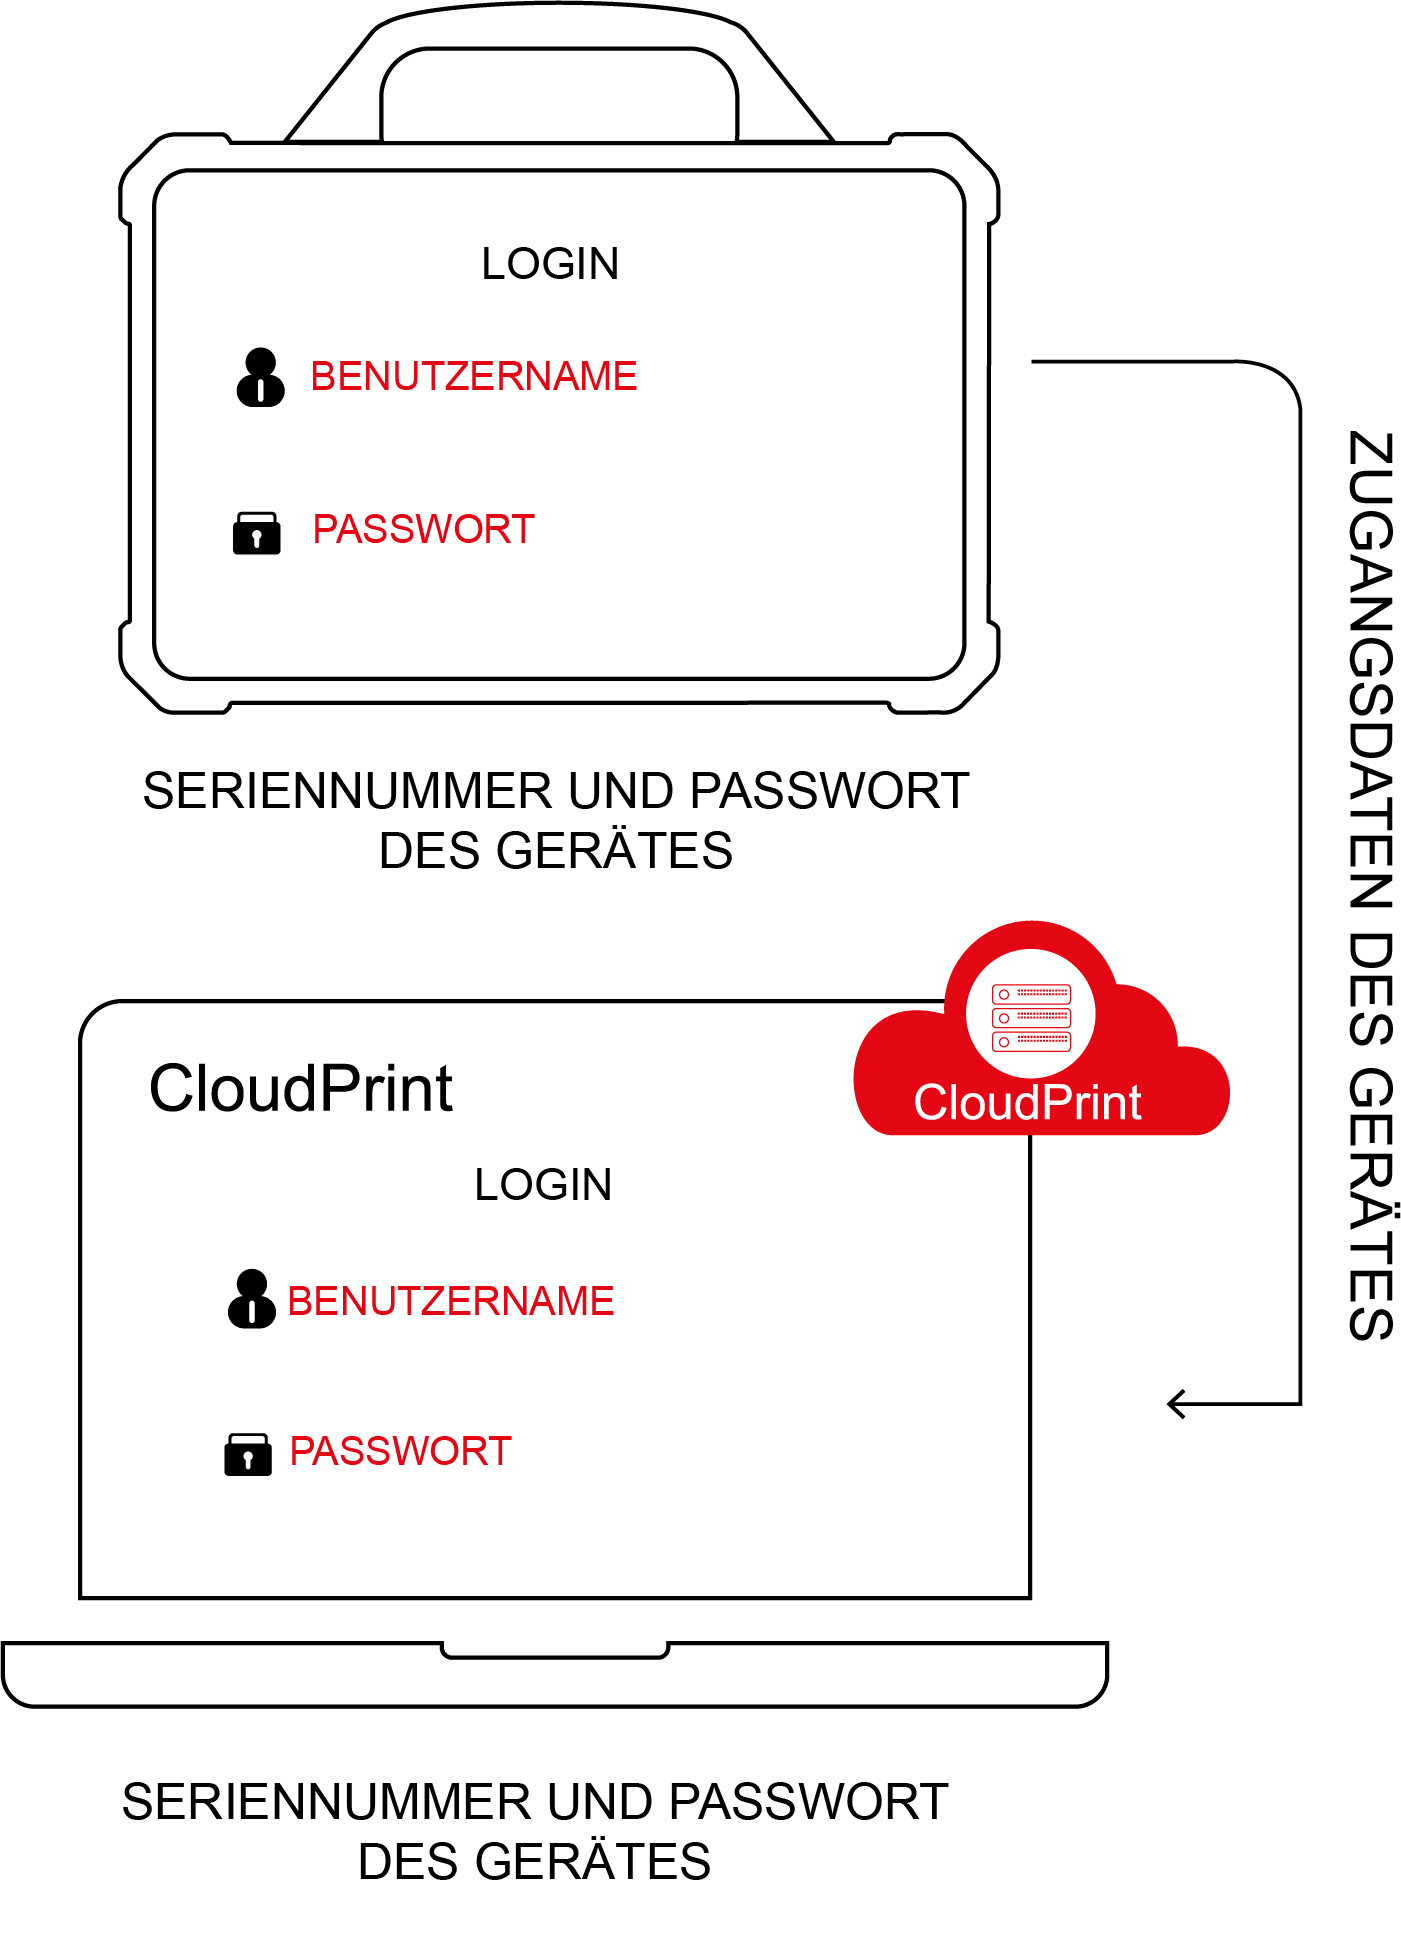 LAUNCH-Europe-Cloud-Print-Platform-zugang-mobile